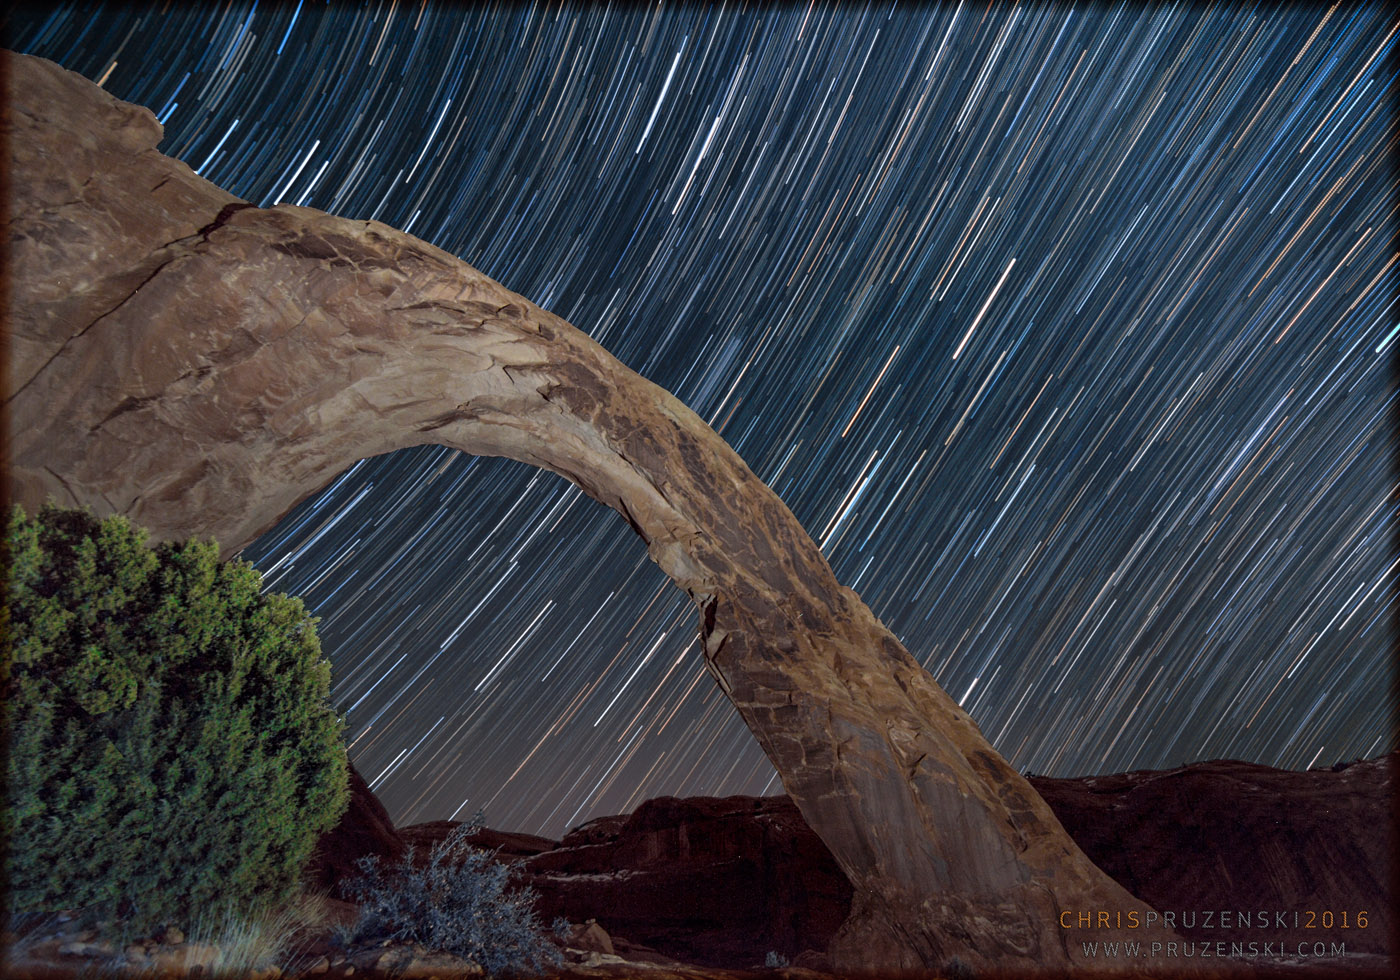 Star Trails Light Up Utah Desert in Stargazer's Stunning Image